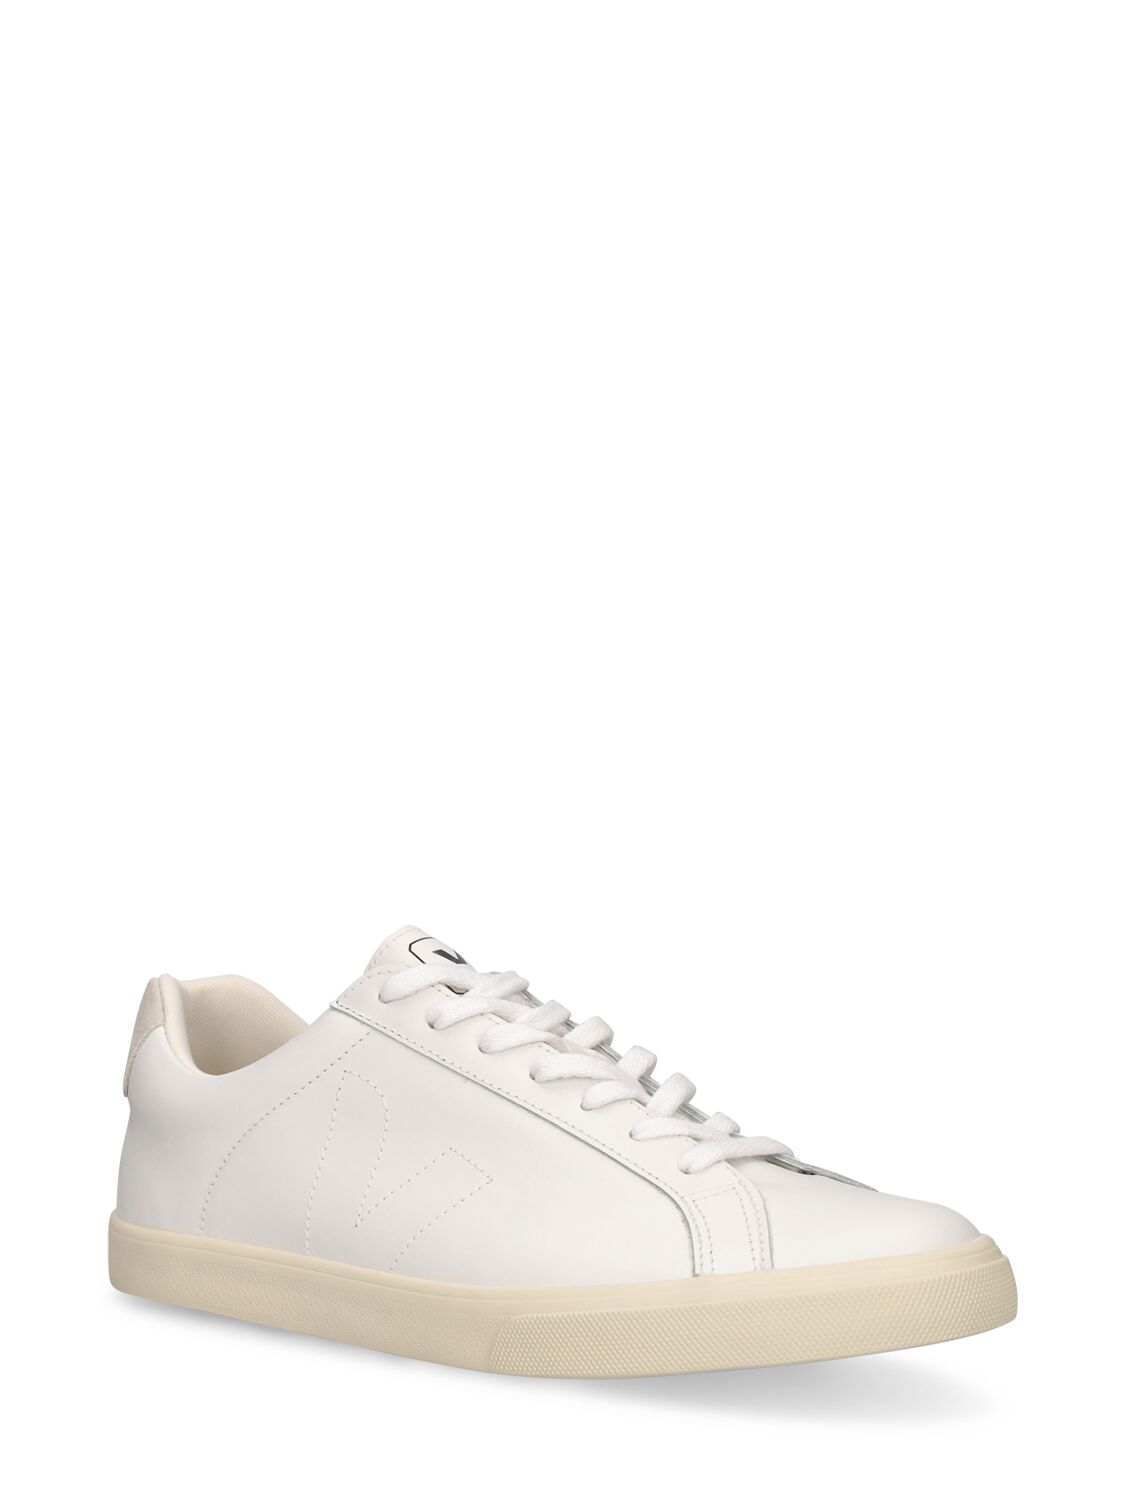 Shop Veja Esplar Sneakers In Extra White